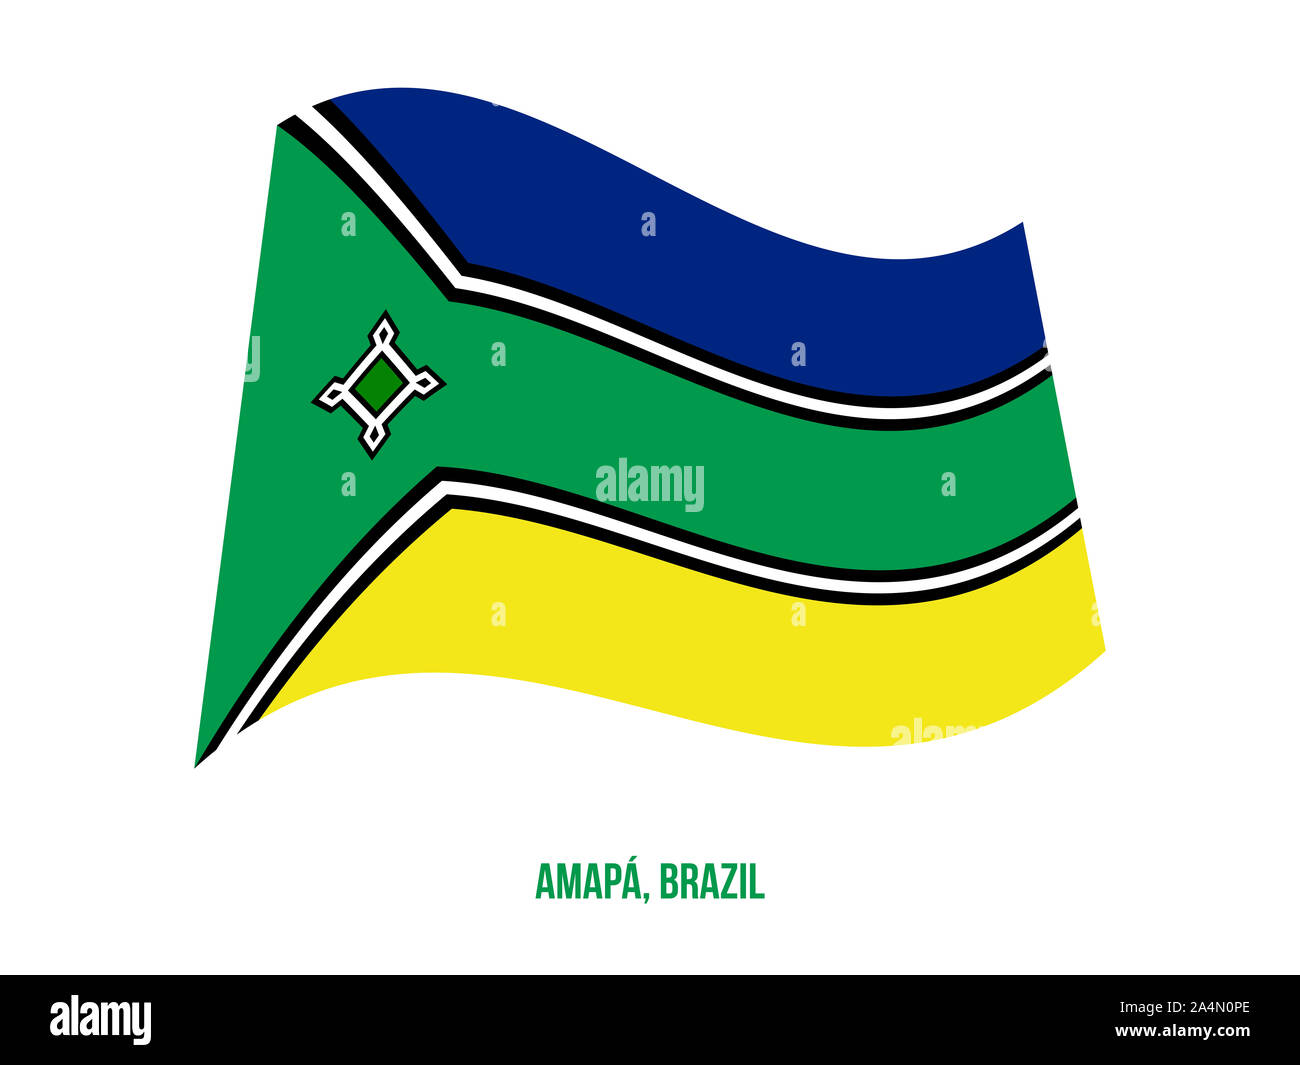 Amapa Flag Waving Vector Illustration on White Background. States Flag of Brazil. Stock Photo